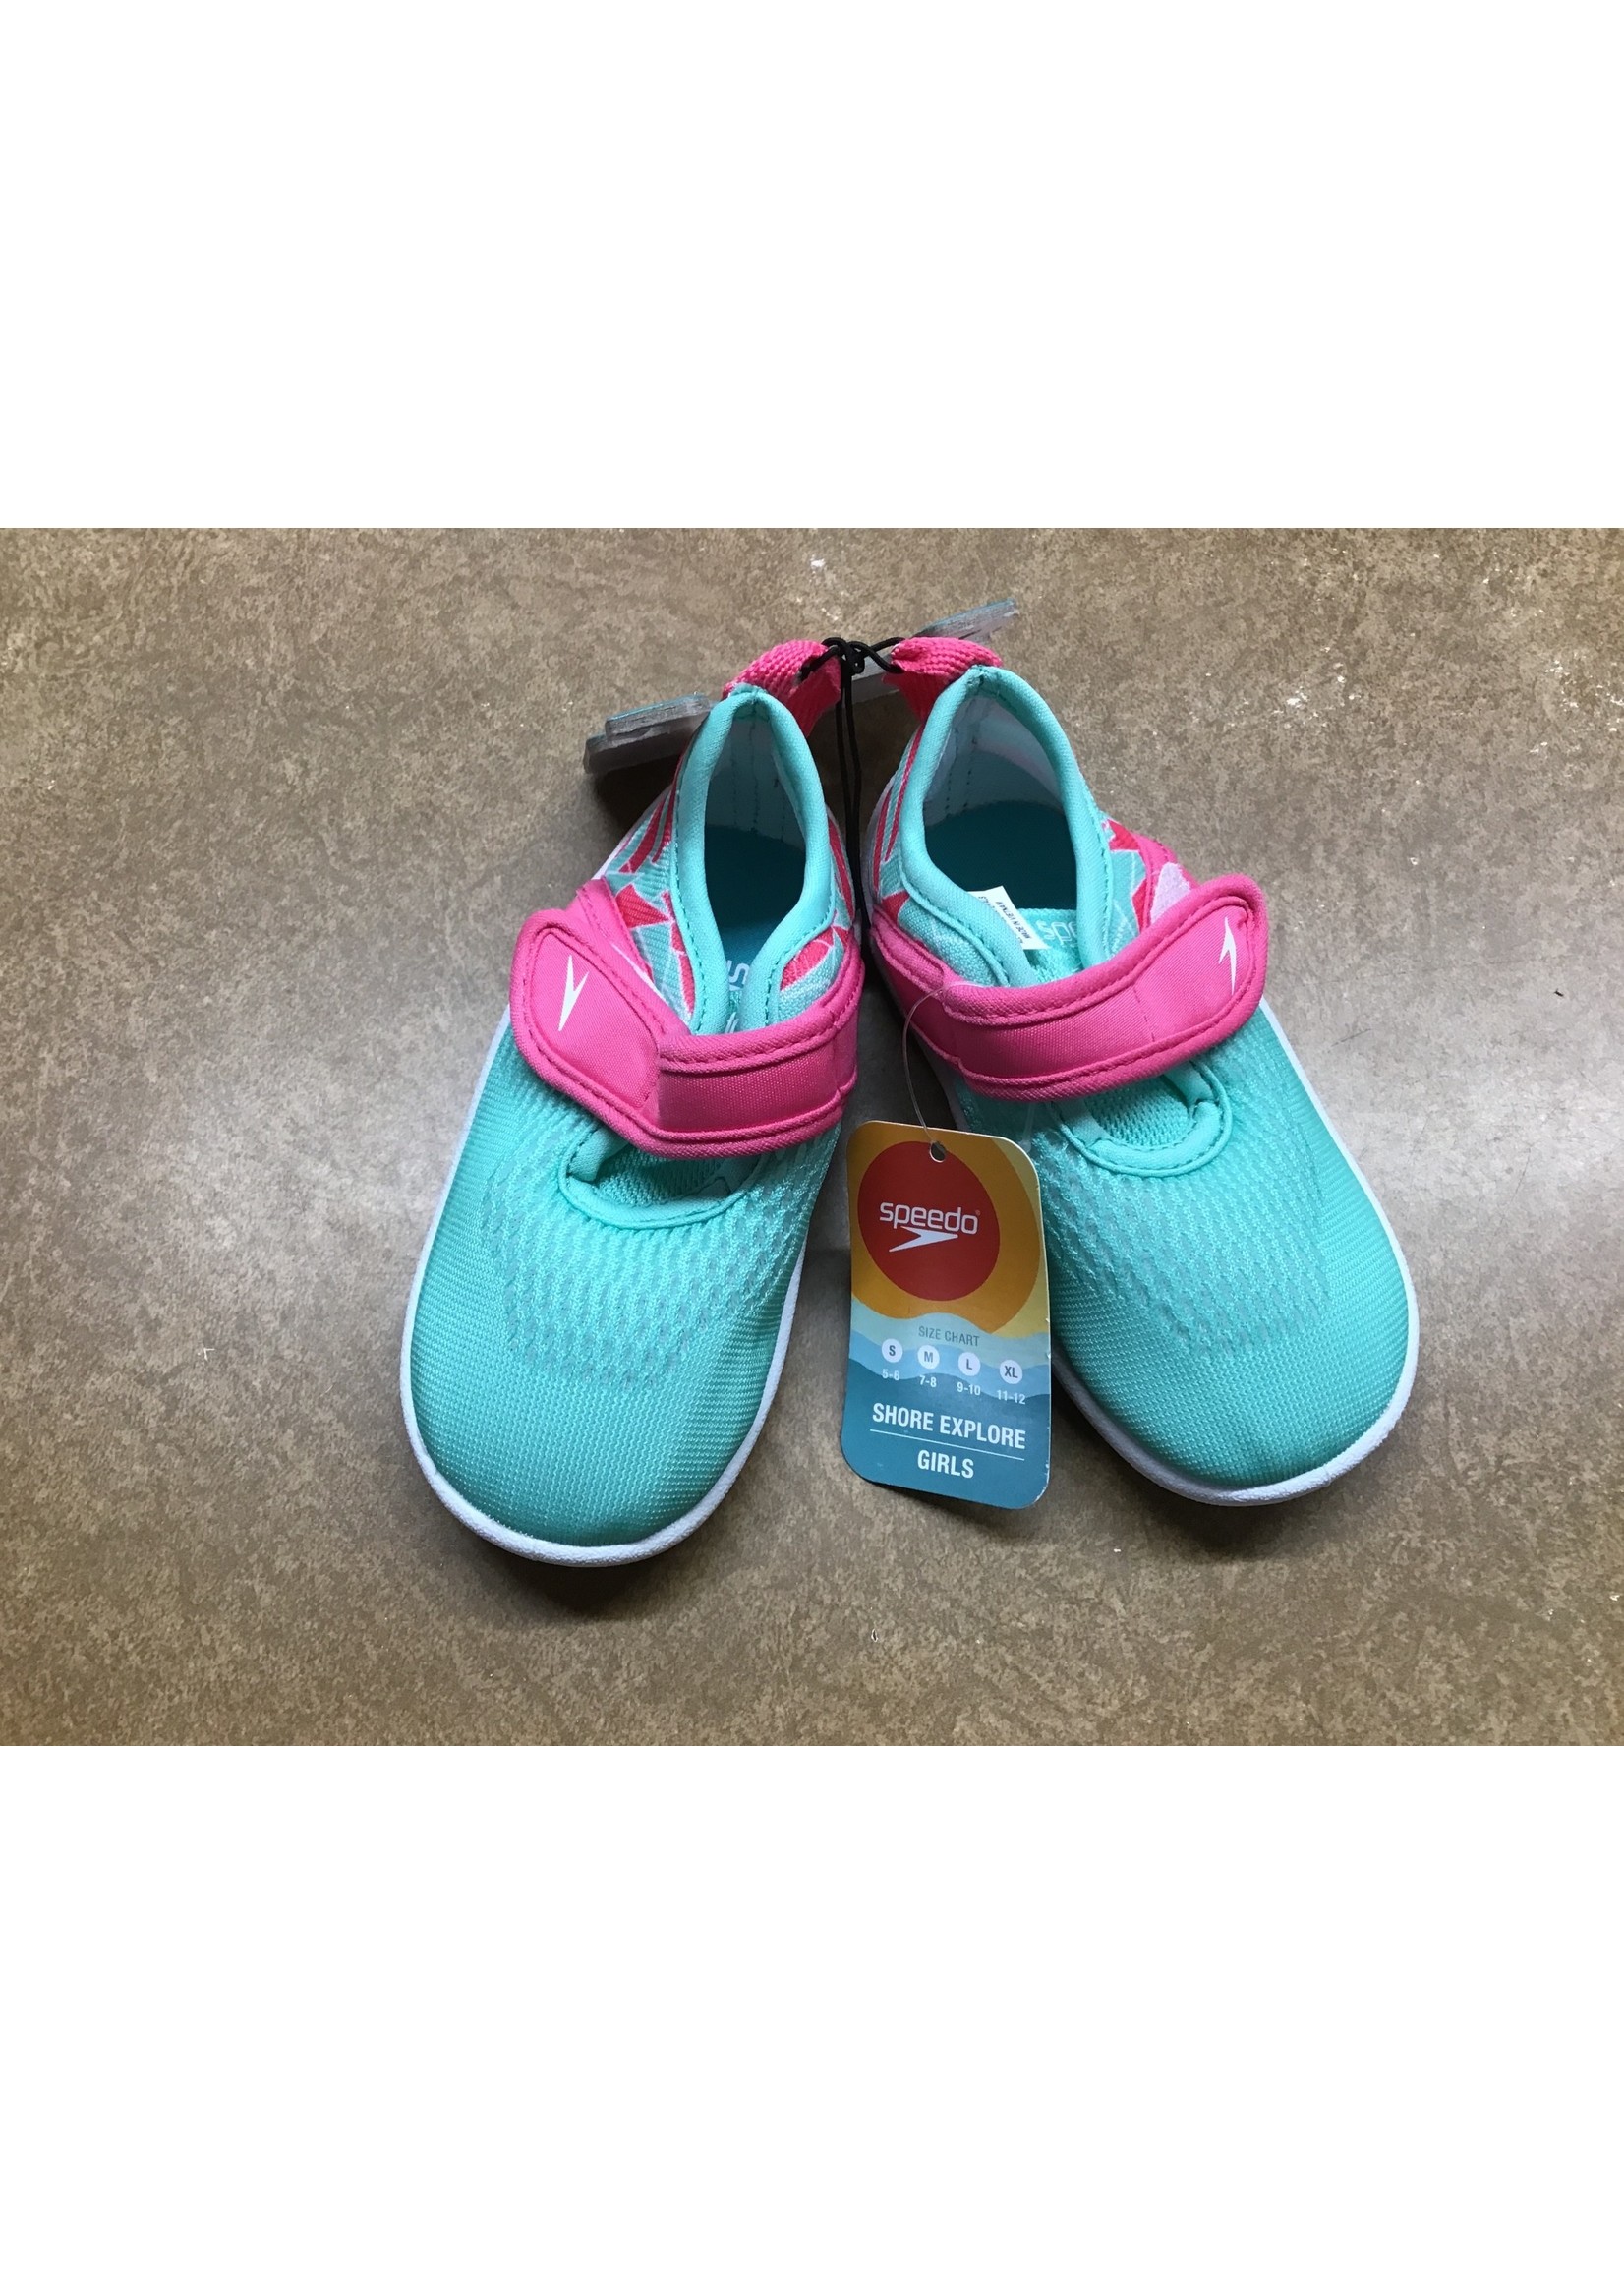 Speedo Toddler Shore Explorer Water Shoes - Mint 5-6 - D3 Surplus Outlet